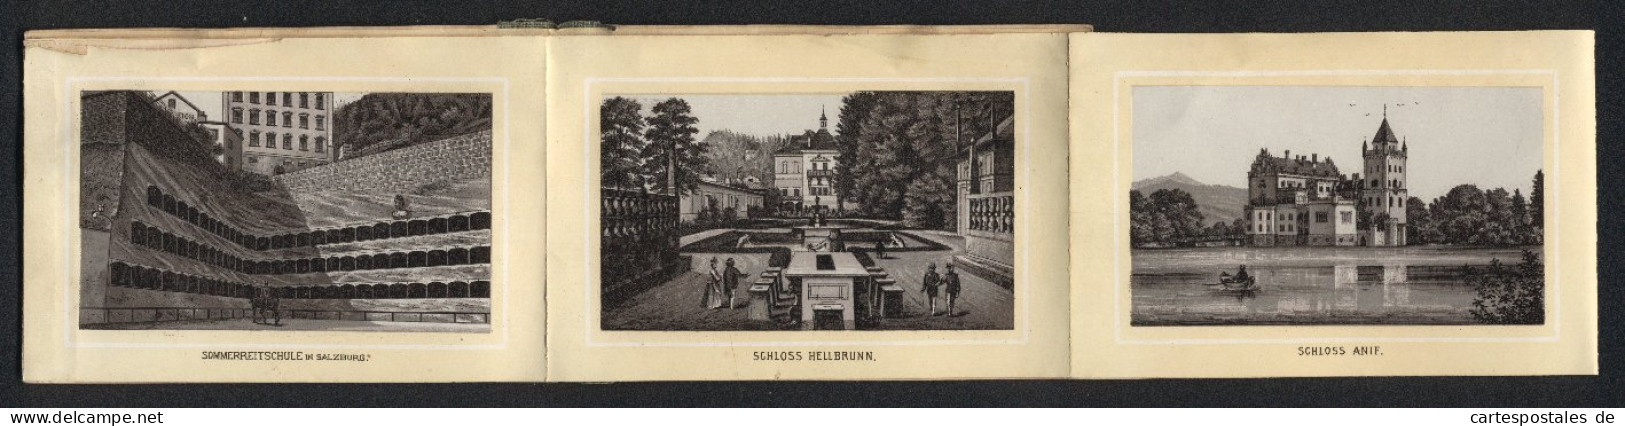 Leporello-Album Salzburg Mit 12 Lithographie-Ansichten, Berchtesgaden, Schloss Anif, Sommerreitschule, Mozartplatz  - Litografia